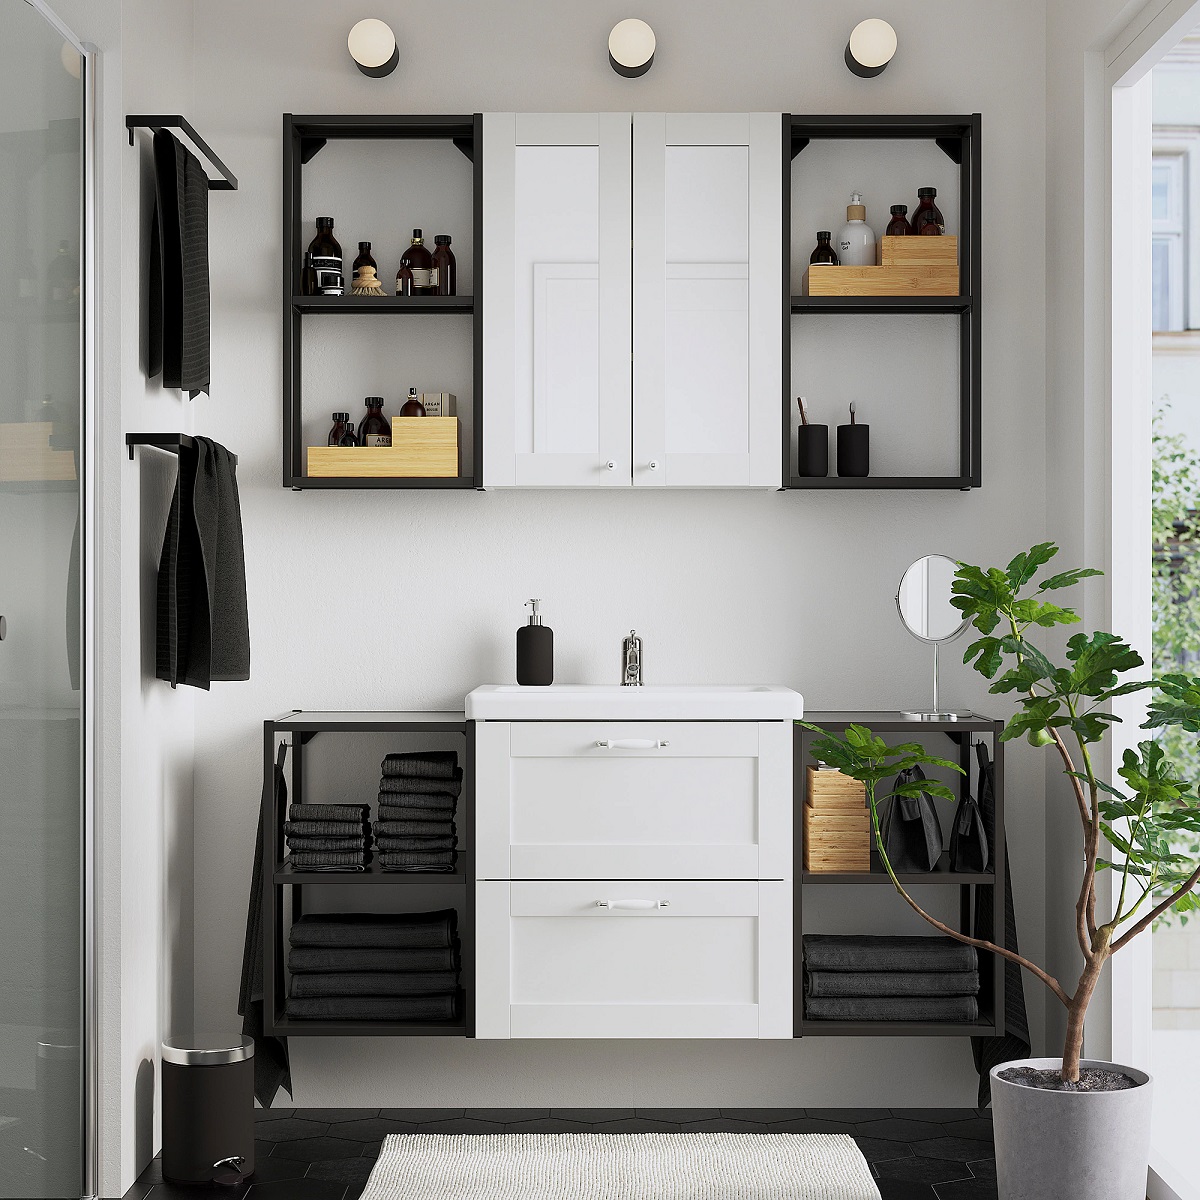 Bagni Ikea: accessori e complementi per un ambiente confortevole